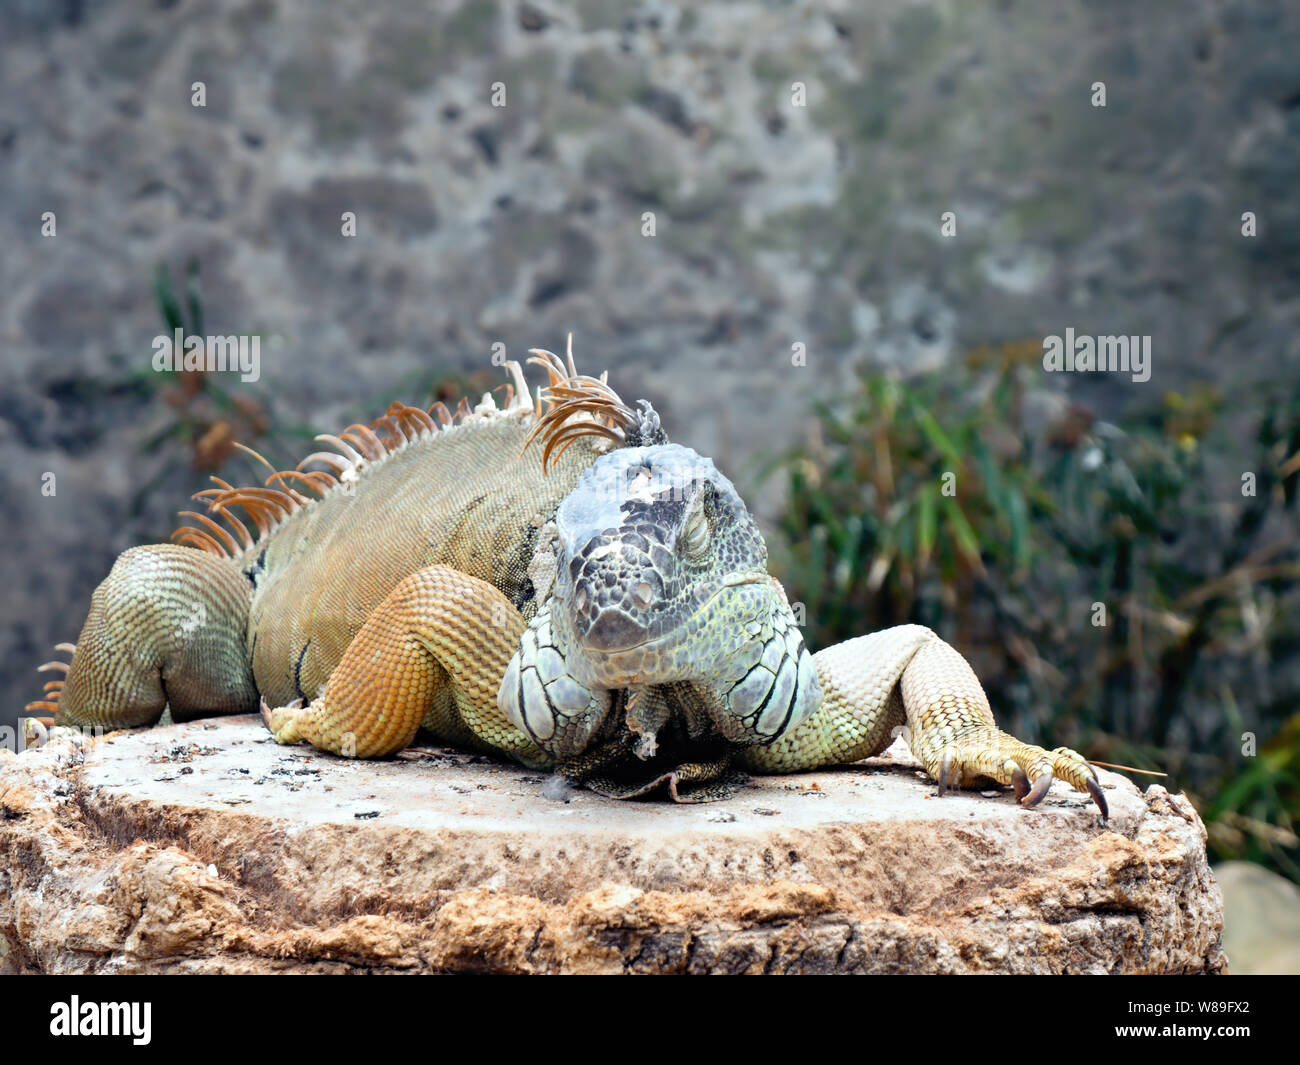 Un grand iguane adulte avec différentes nuances de vert et bleu ainsi qu'un peu de jaune se trouve sur un rocher, la jambe droite derrière la crête, sur la Banque D'Images